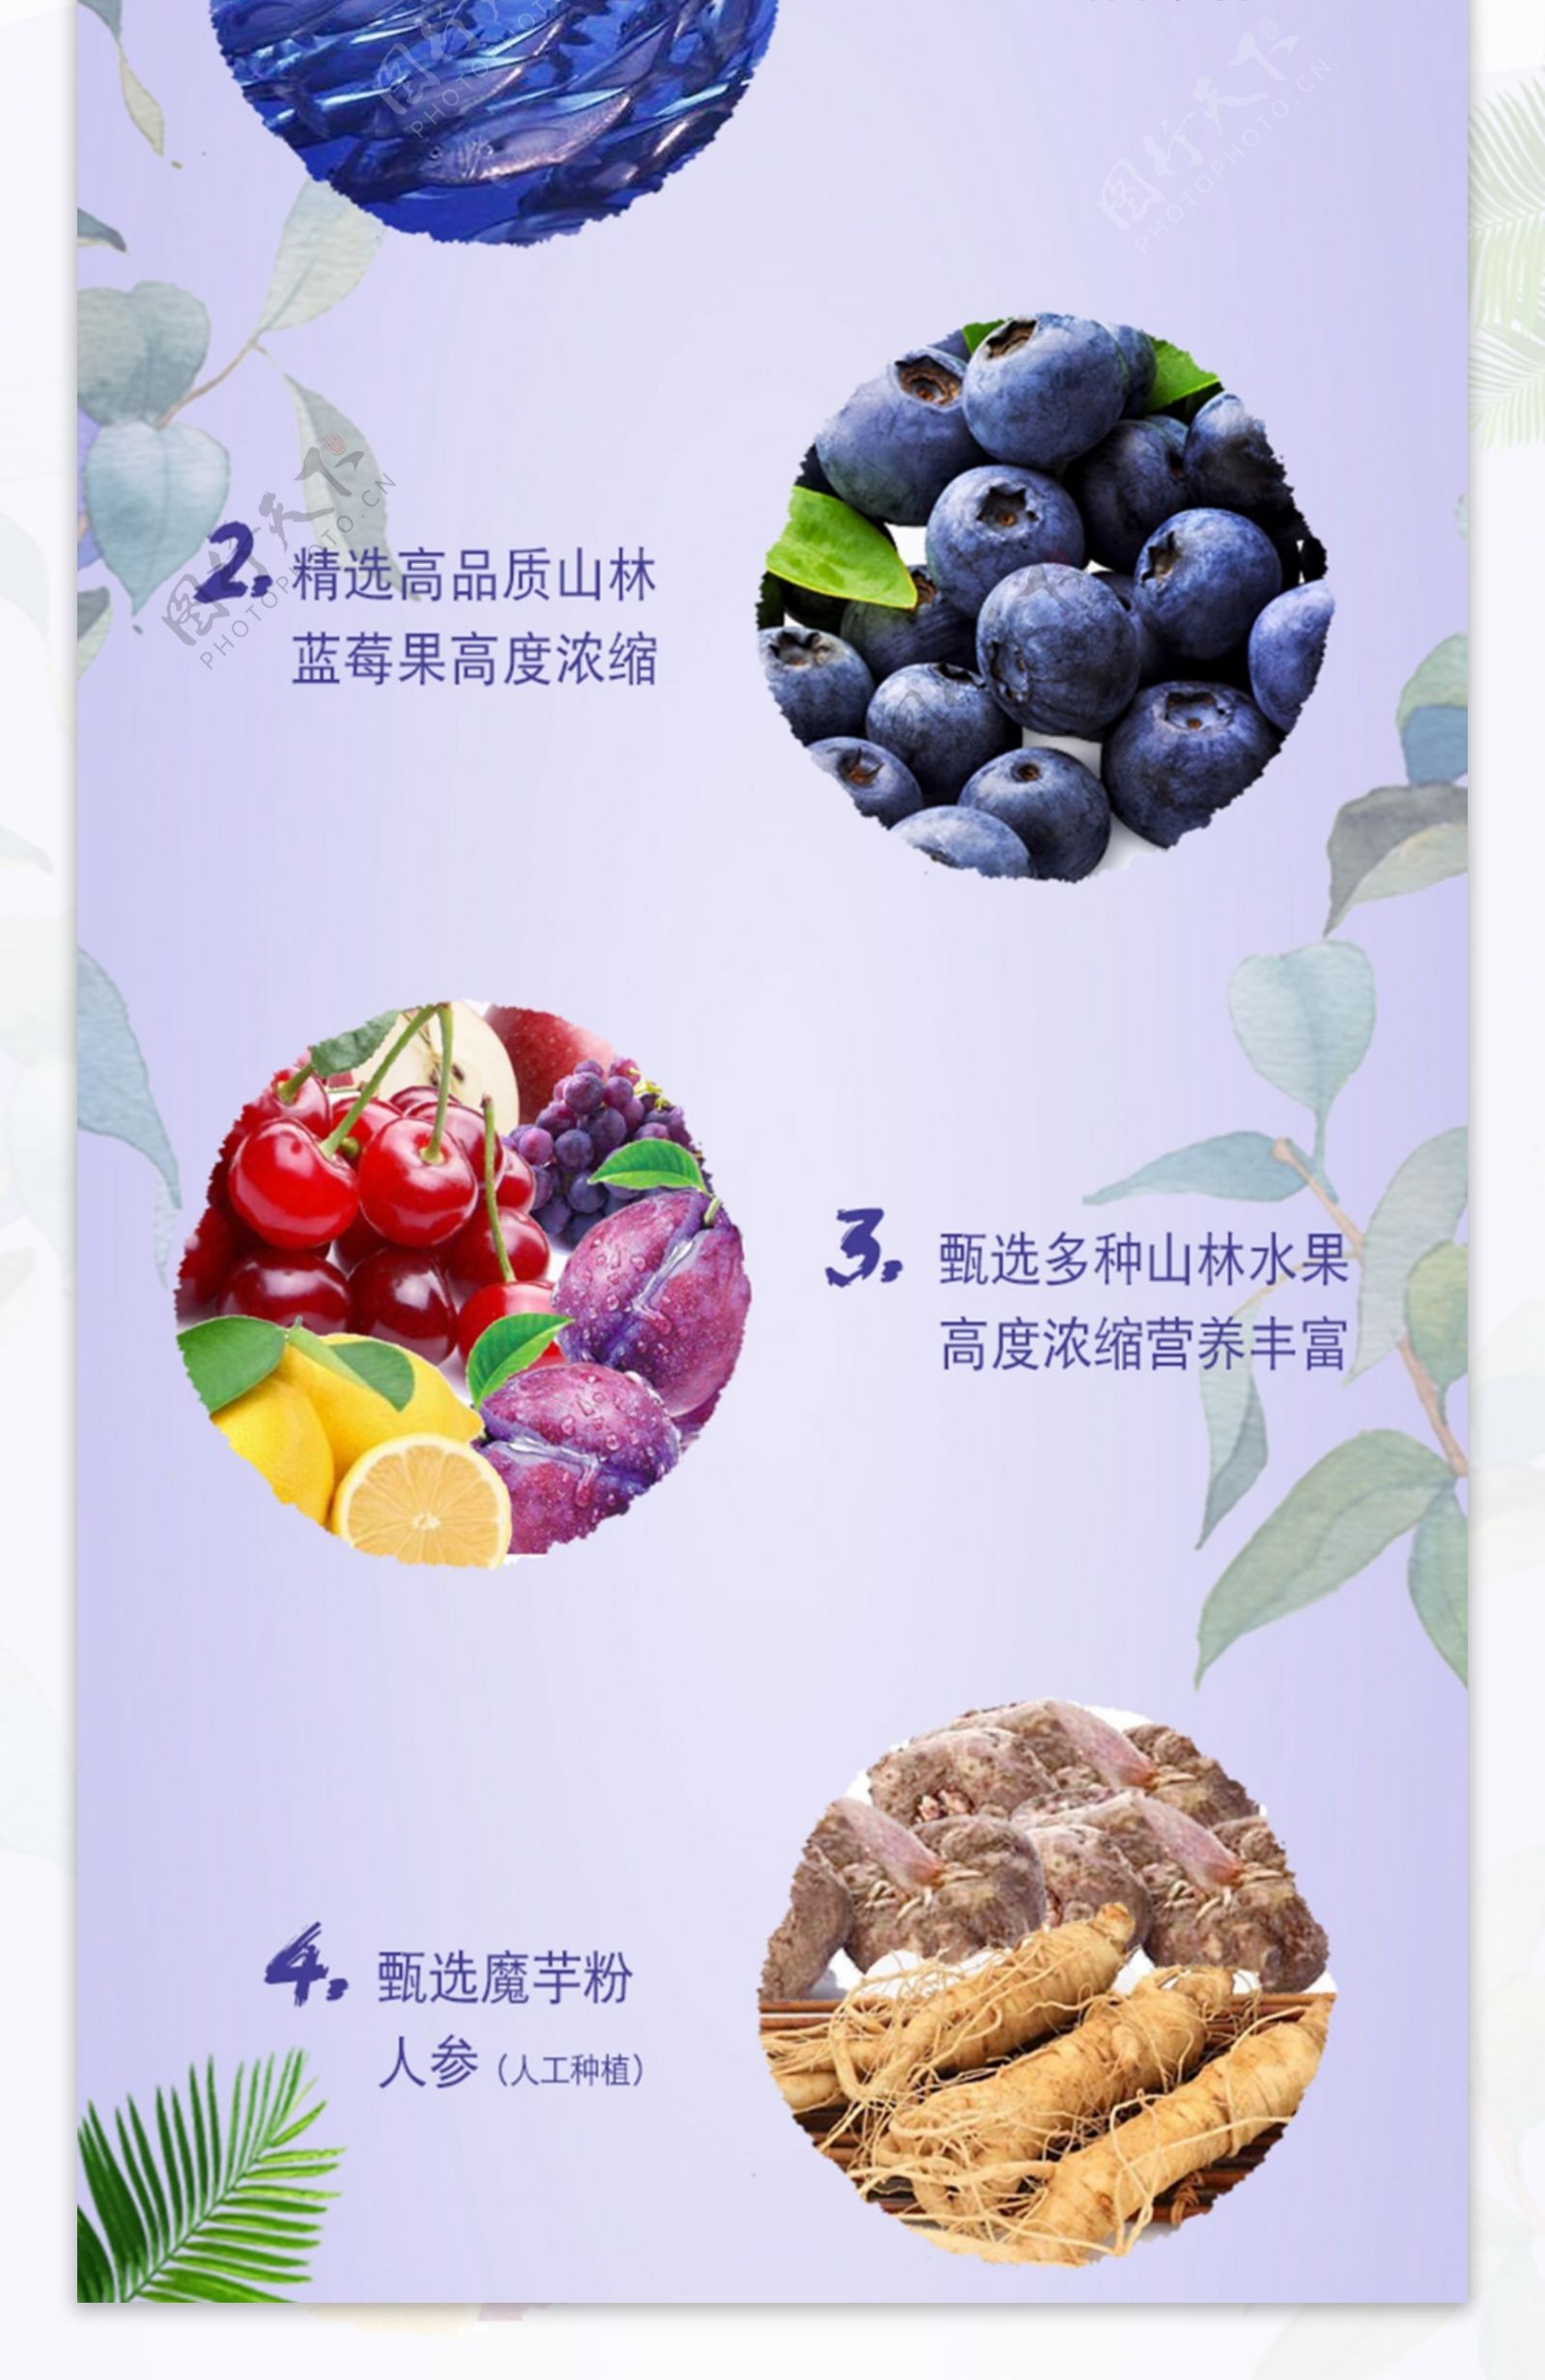 蓝莓胶原蛋白液饮品燕窝滋补养生保健食品